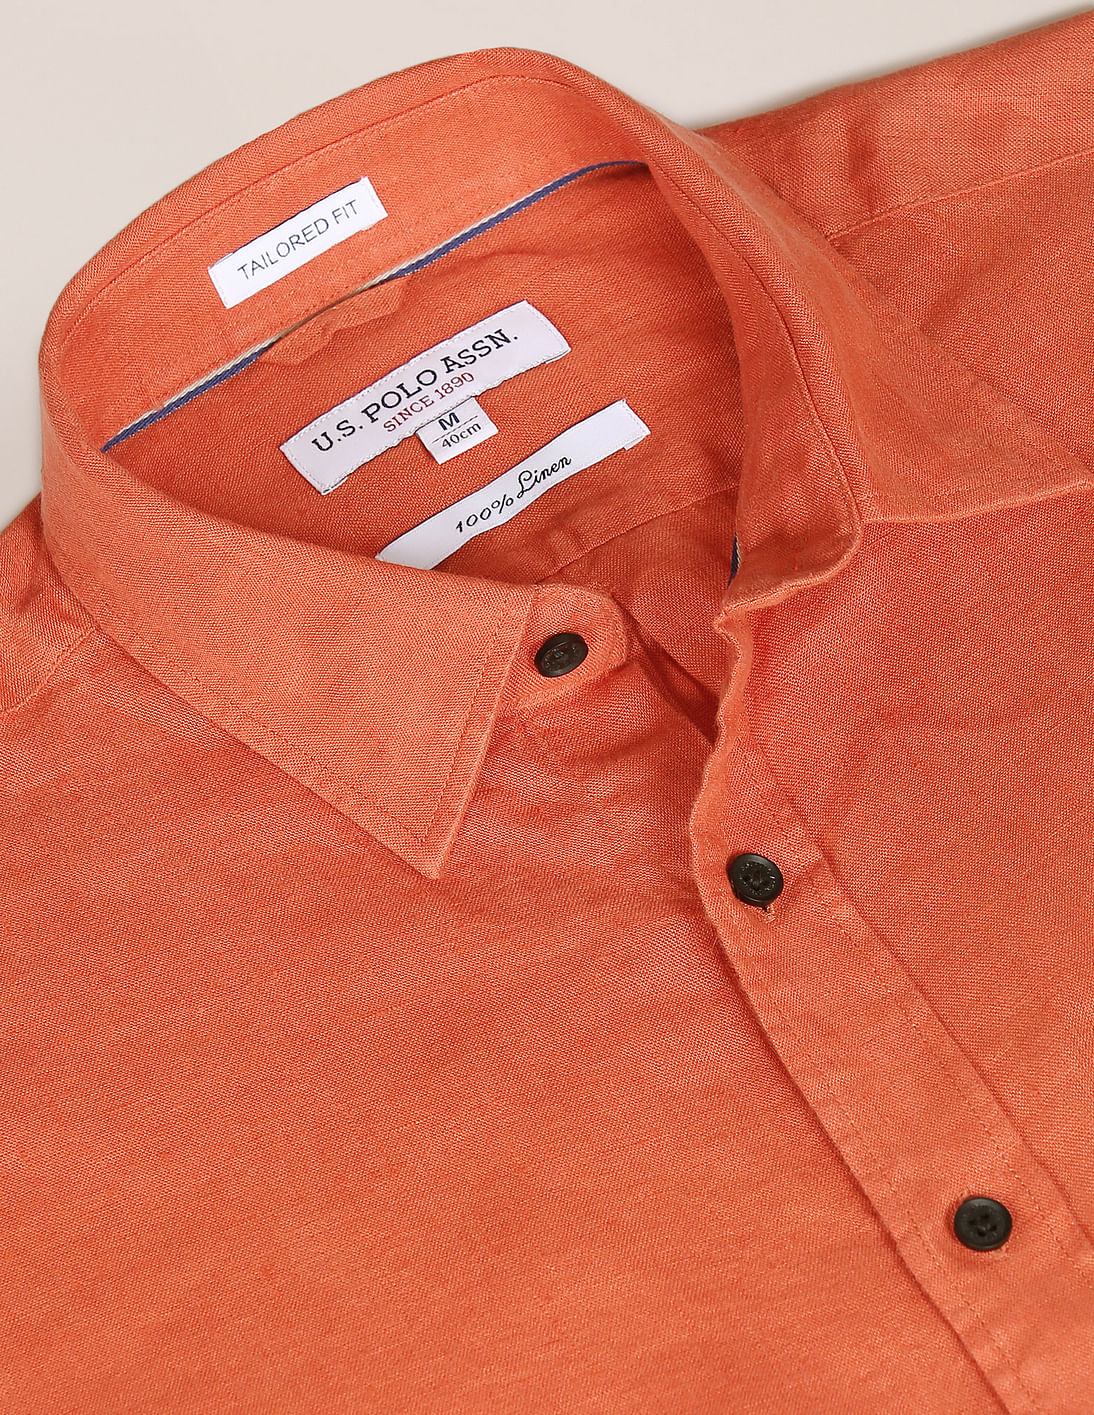 Buy U.S. Polo Assn. Short Sleeve Pure Linen Shirt - NNNOW.com